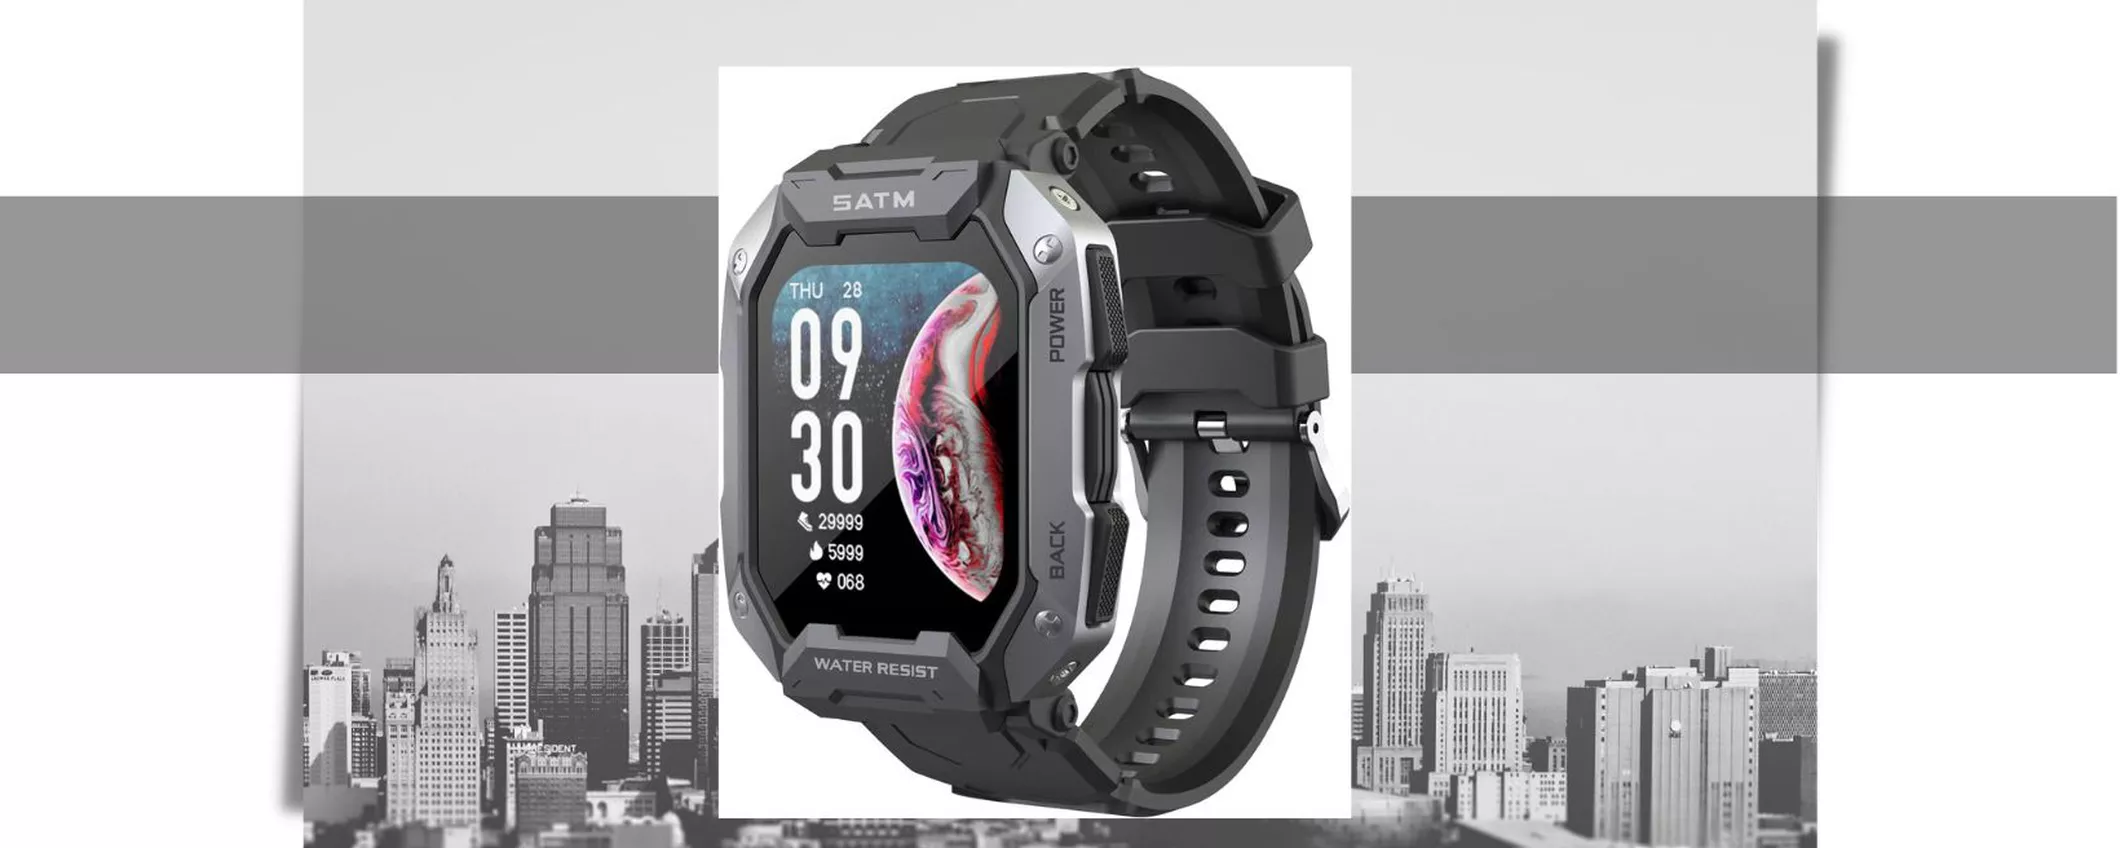 Standard militare MIL-STD NATO, lo smartwatch del momento costa appena 35€